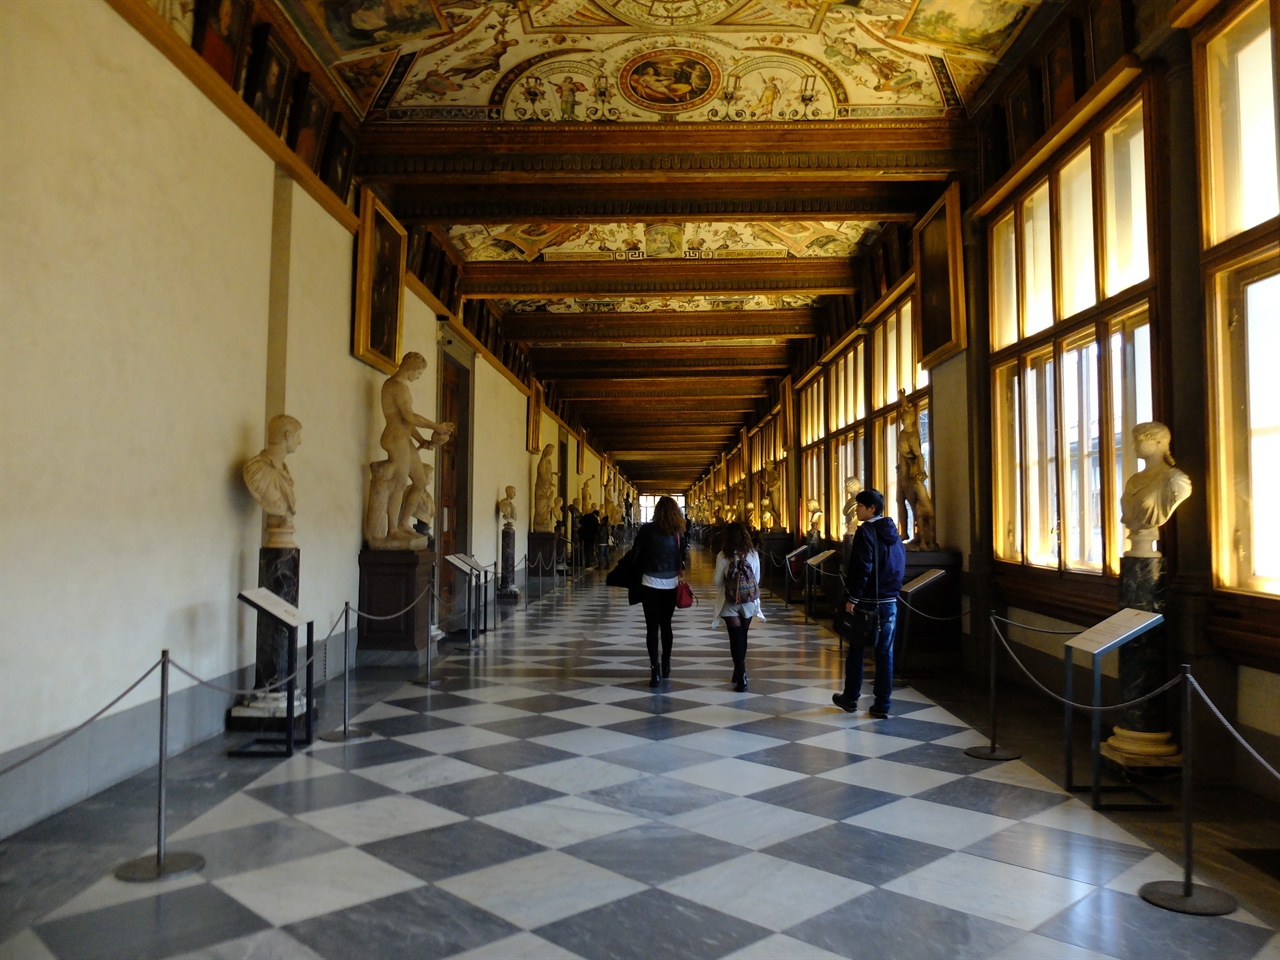 우피치 미술관의 복도 조르조 바사리가 설계한 '우피치 미술관'의 긴 복도는 아카데믹한 분위기를 자아냅니다. 